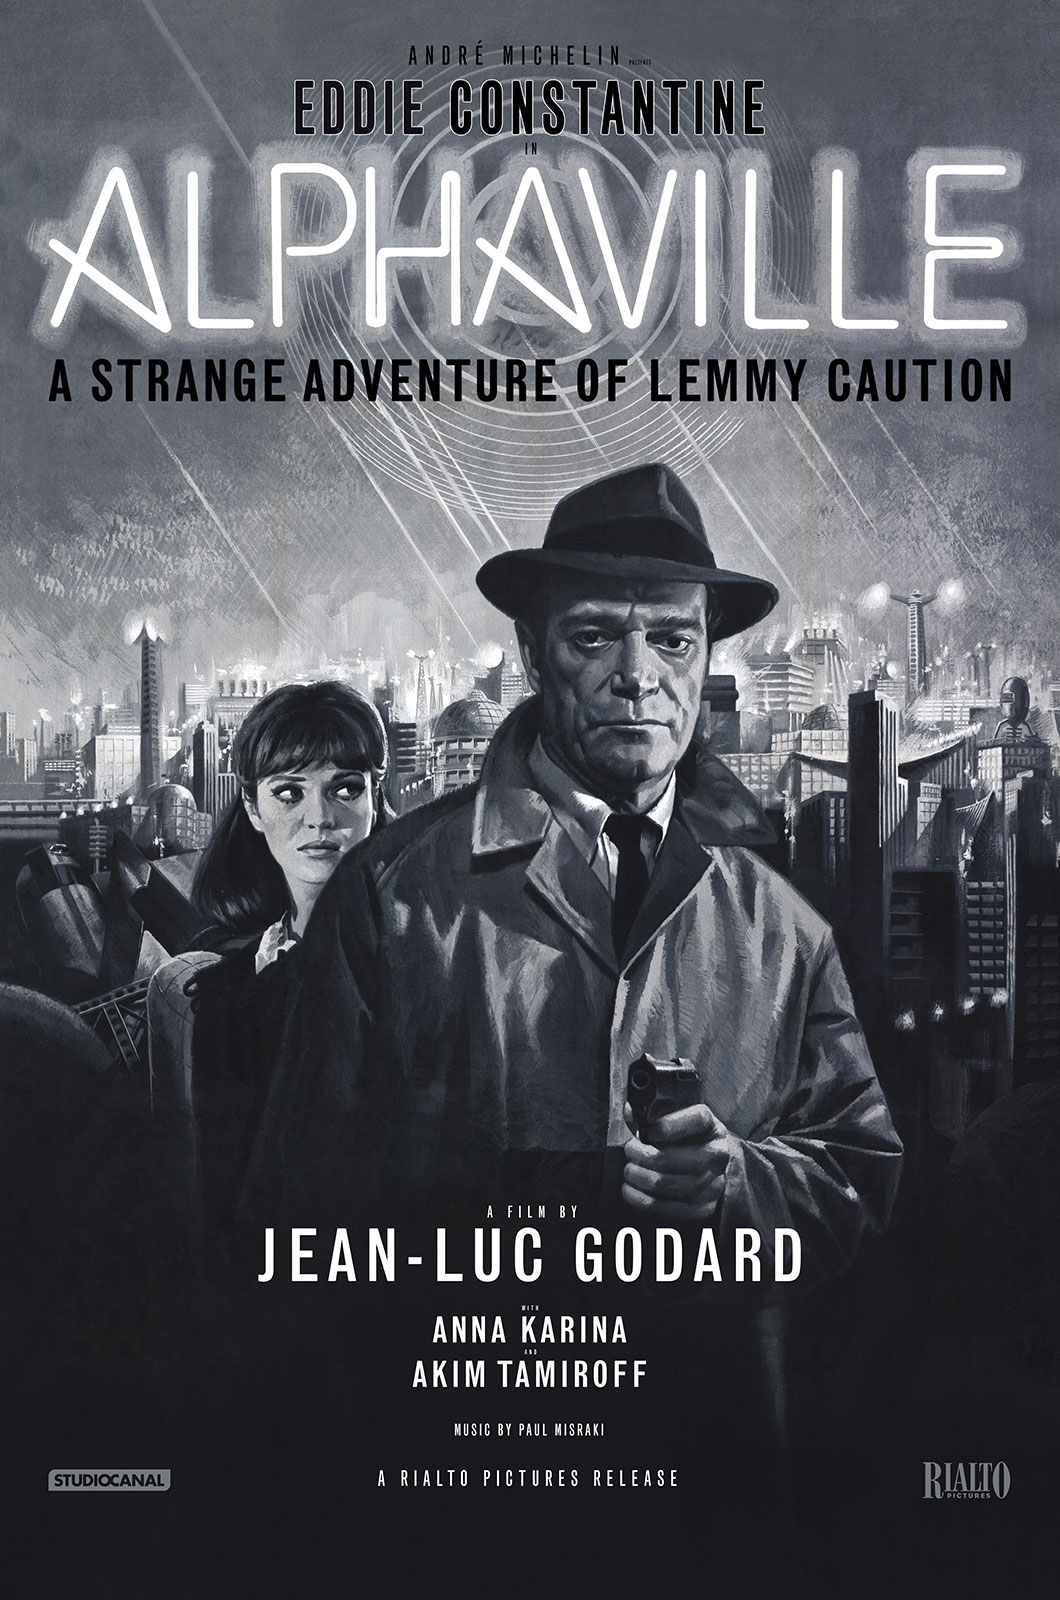 Film poster for Jean-Luc Godard